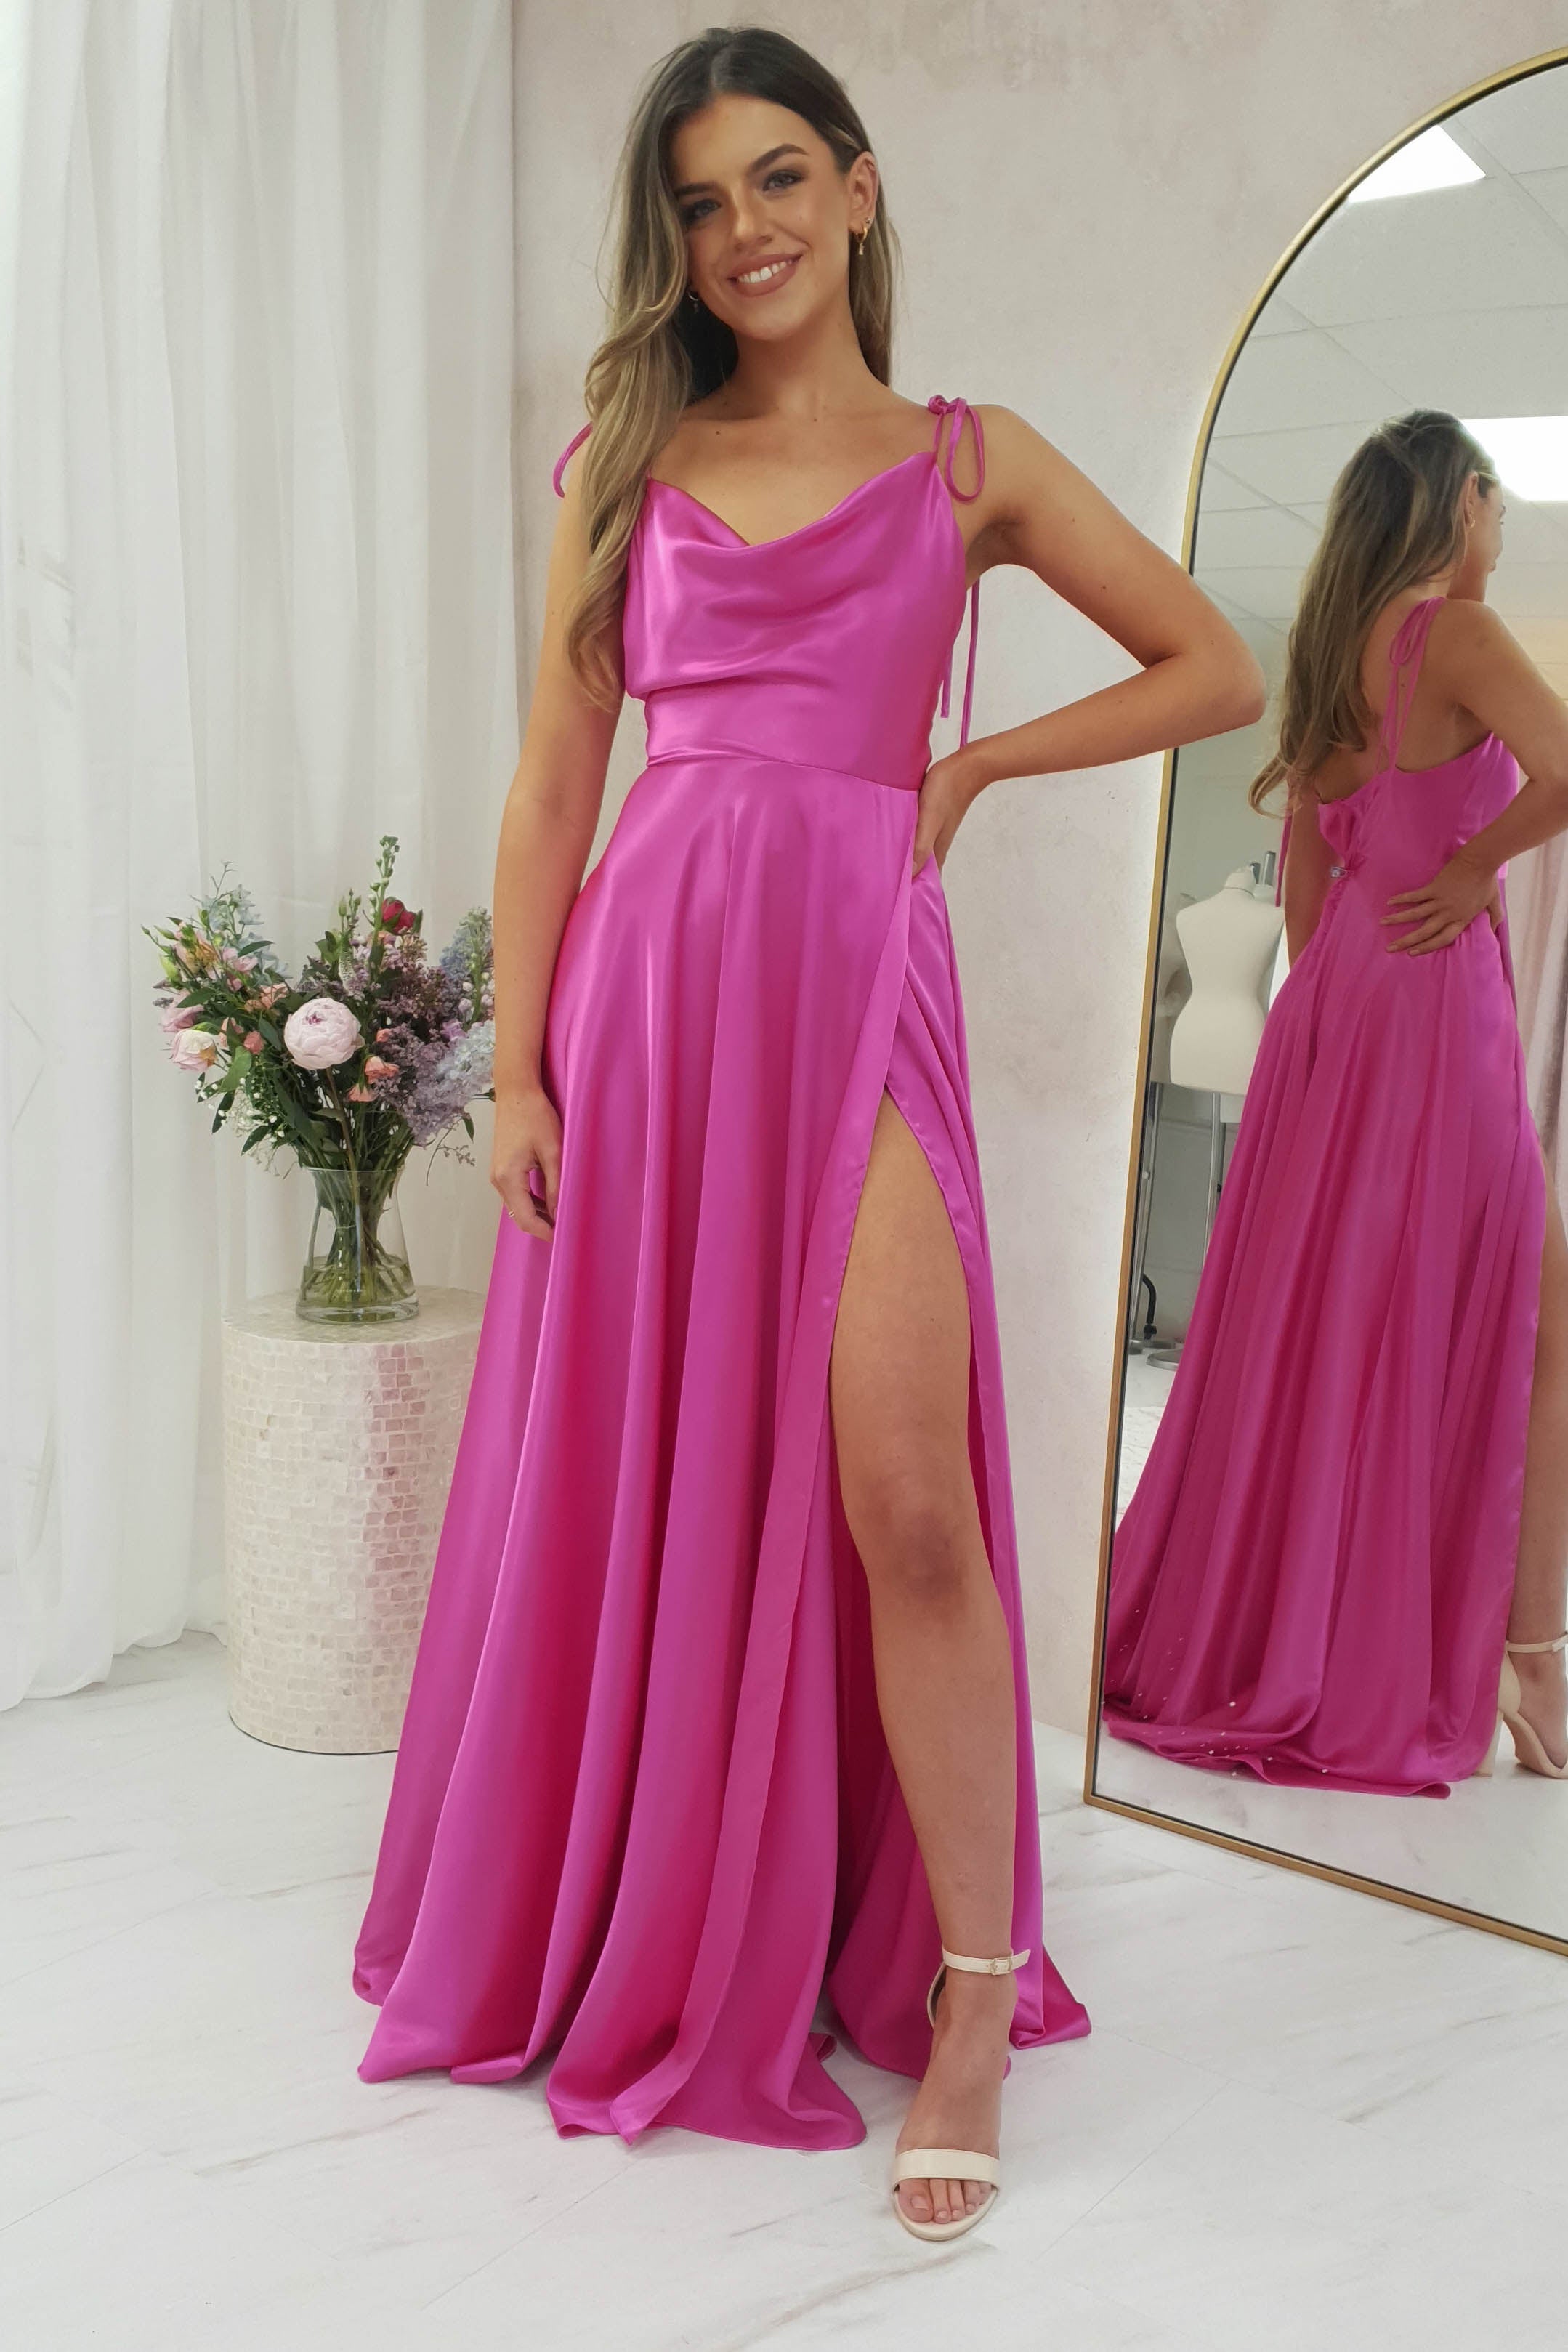 anna-cowl-neckline-gown-hot-pink-30800921460801.jpg